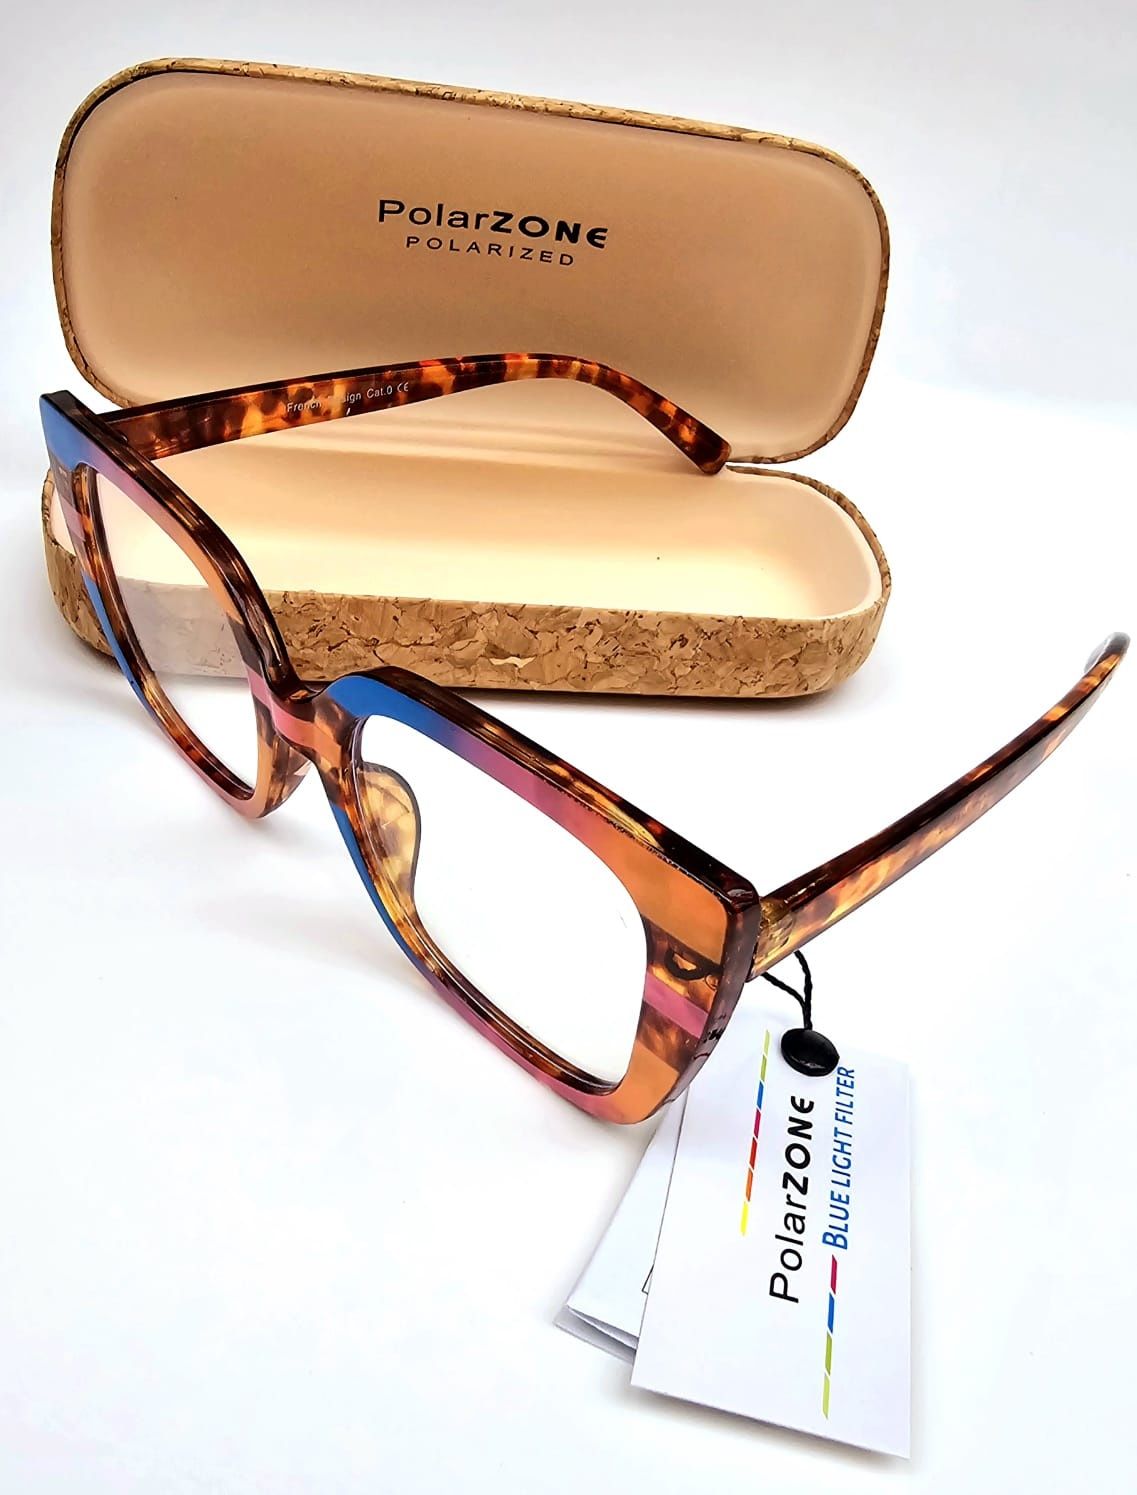 Nowe okulary damskie zerówki marki Polarzone modne